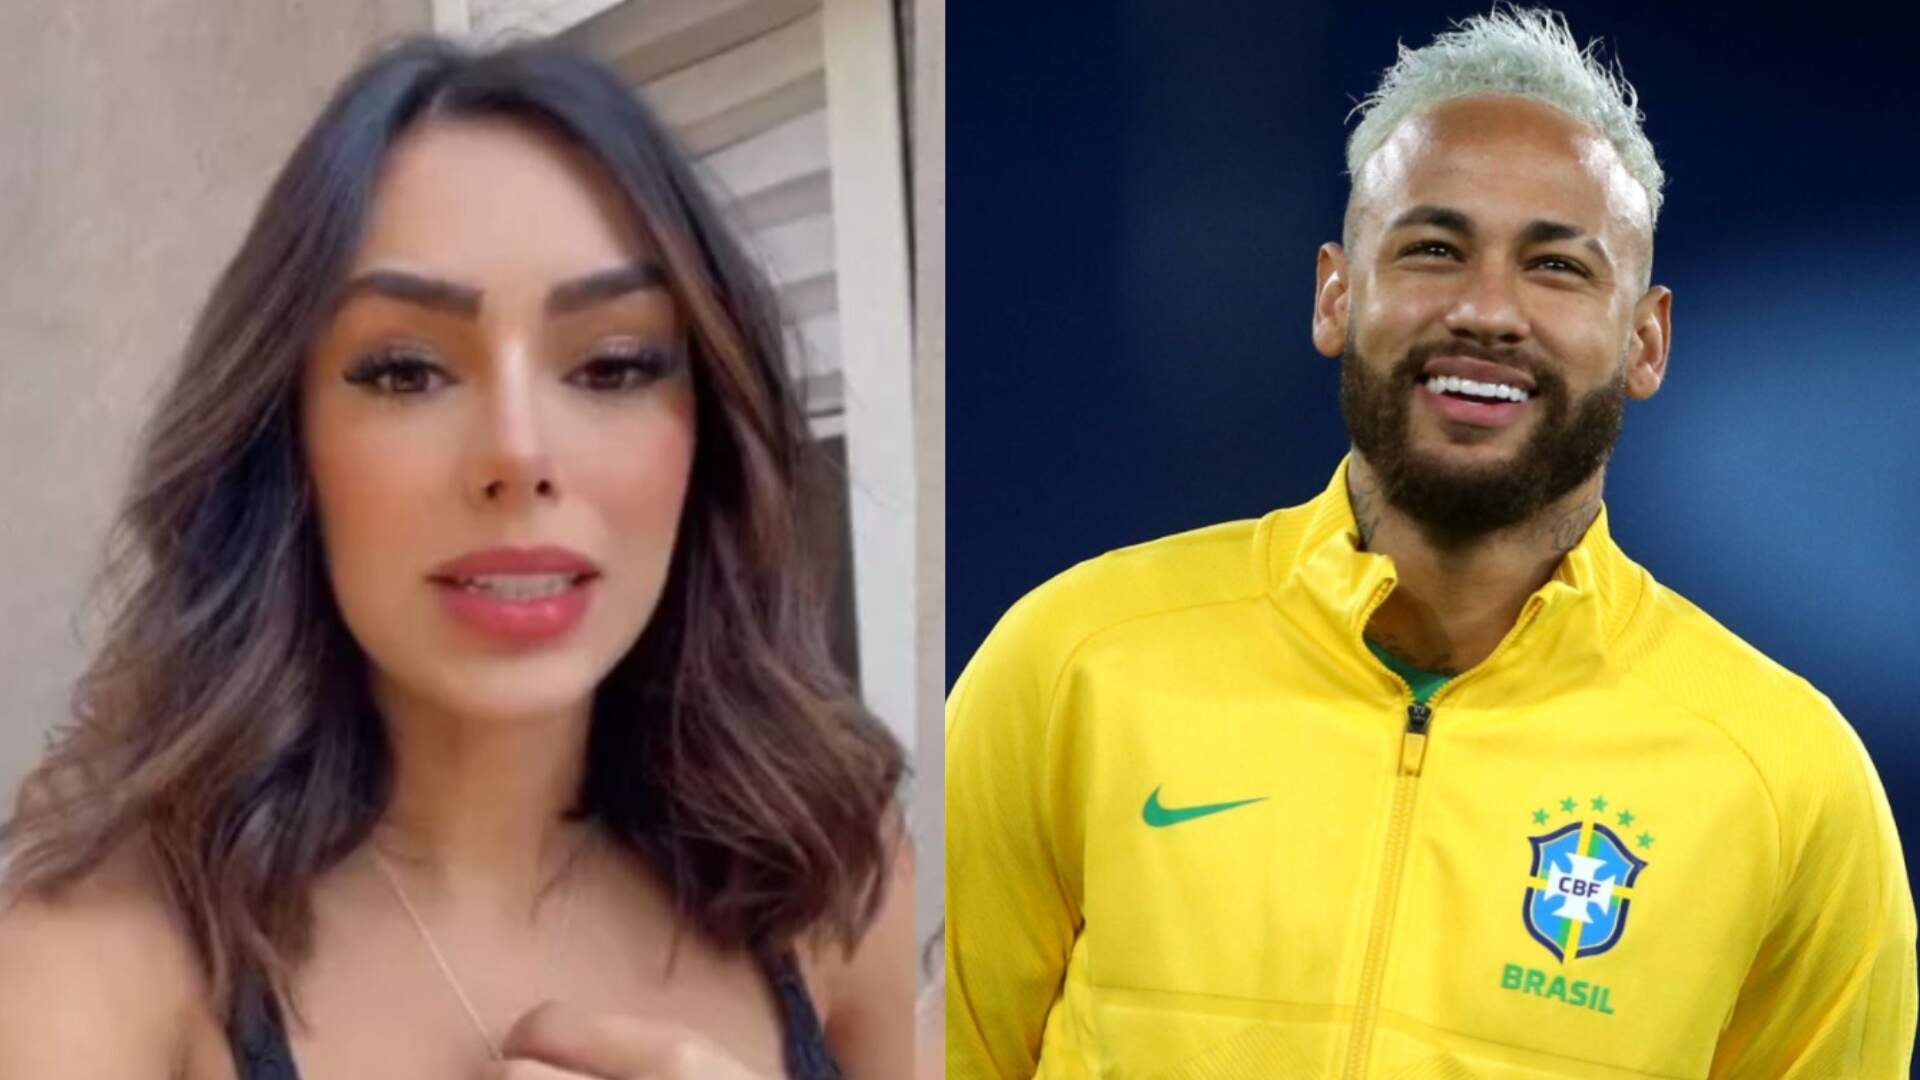 Após separação, ex de Neymar, Bruna desembarca no Qatar e revela motivo da sua visita ao país - Metropolitana FM